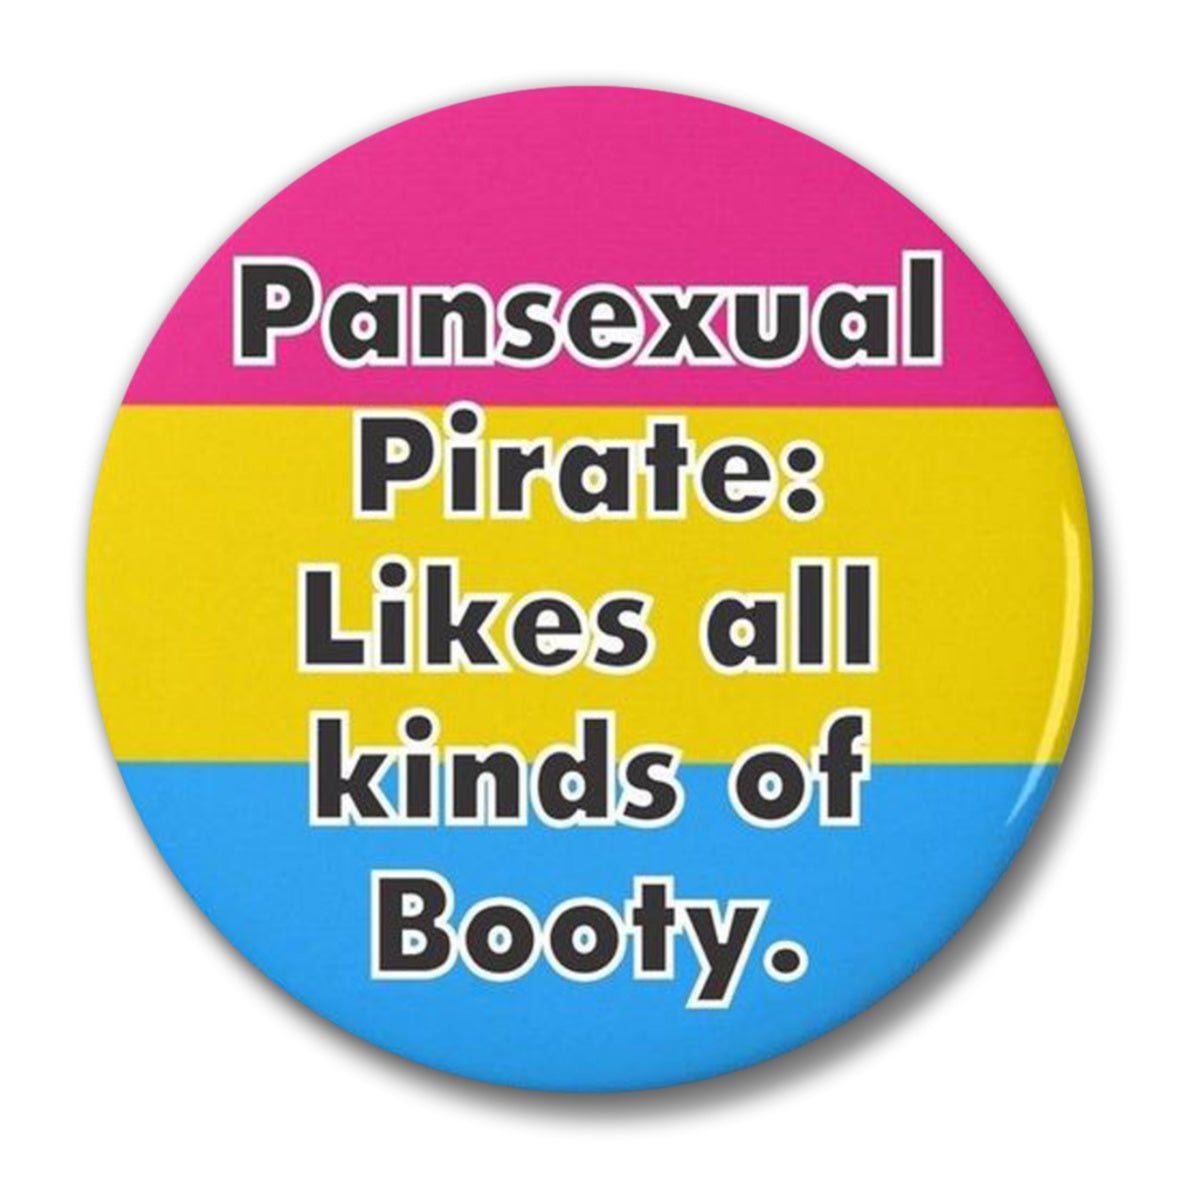 Pansexual Pirates